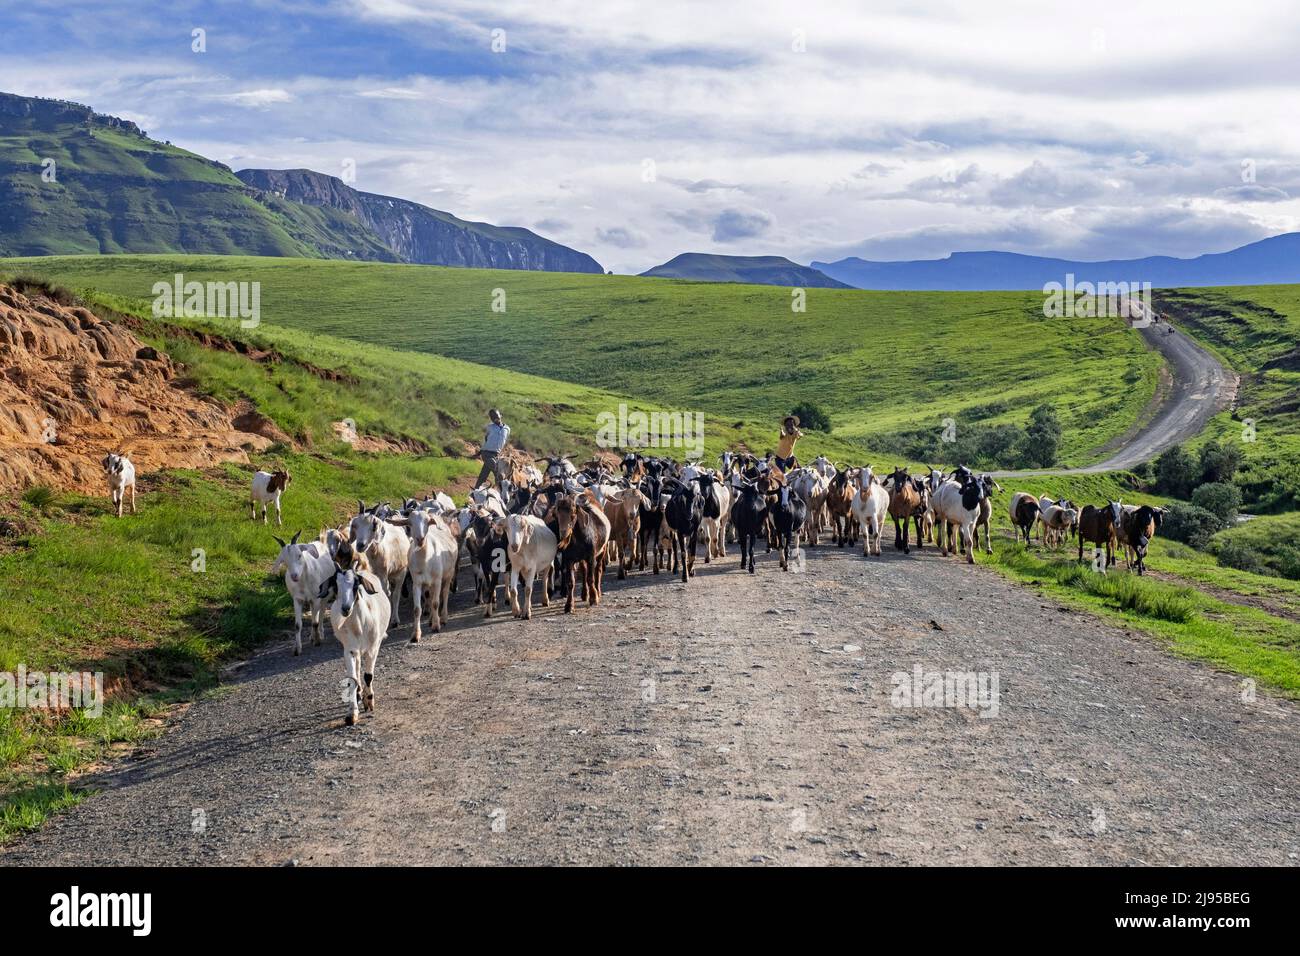 La catena montuosa di Drakensberg e i bambini neri che mandano capre lungo la strada nella campagna dell'area di Injisuthi in KwaZulu-Natal, Sudafrica Foto Stock